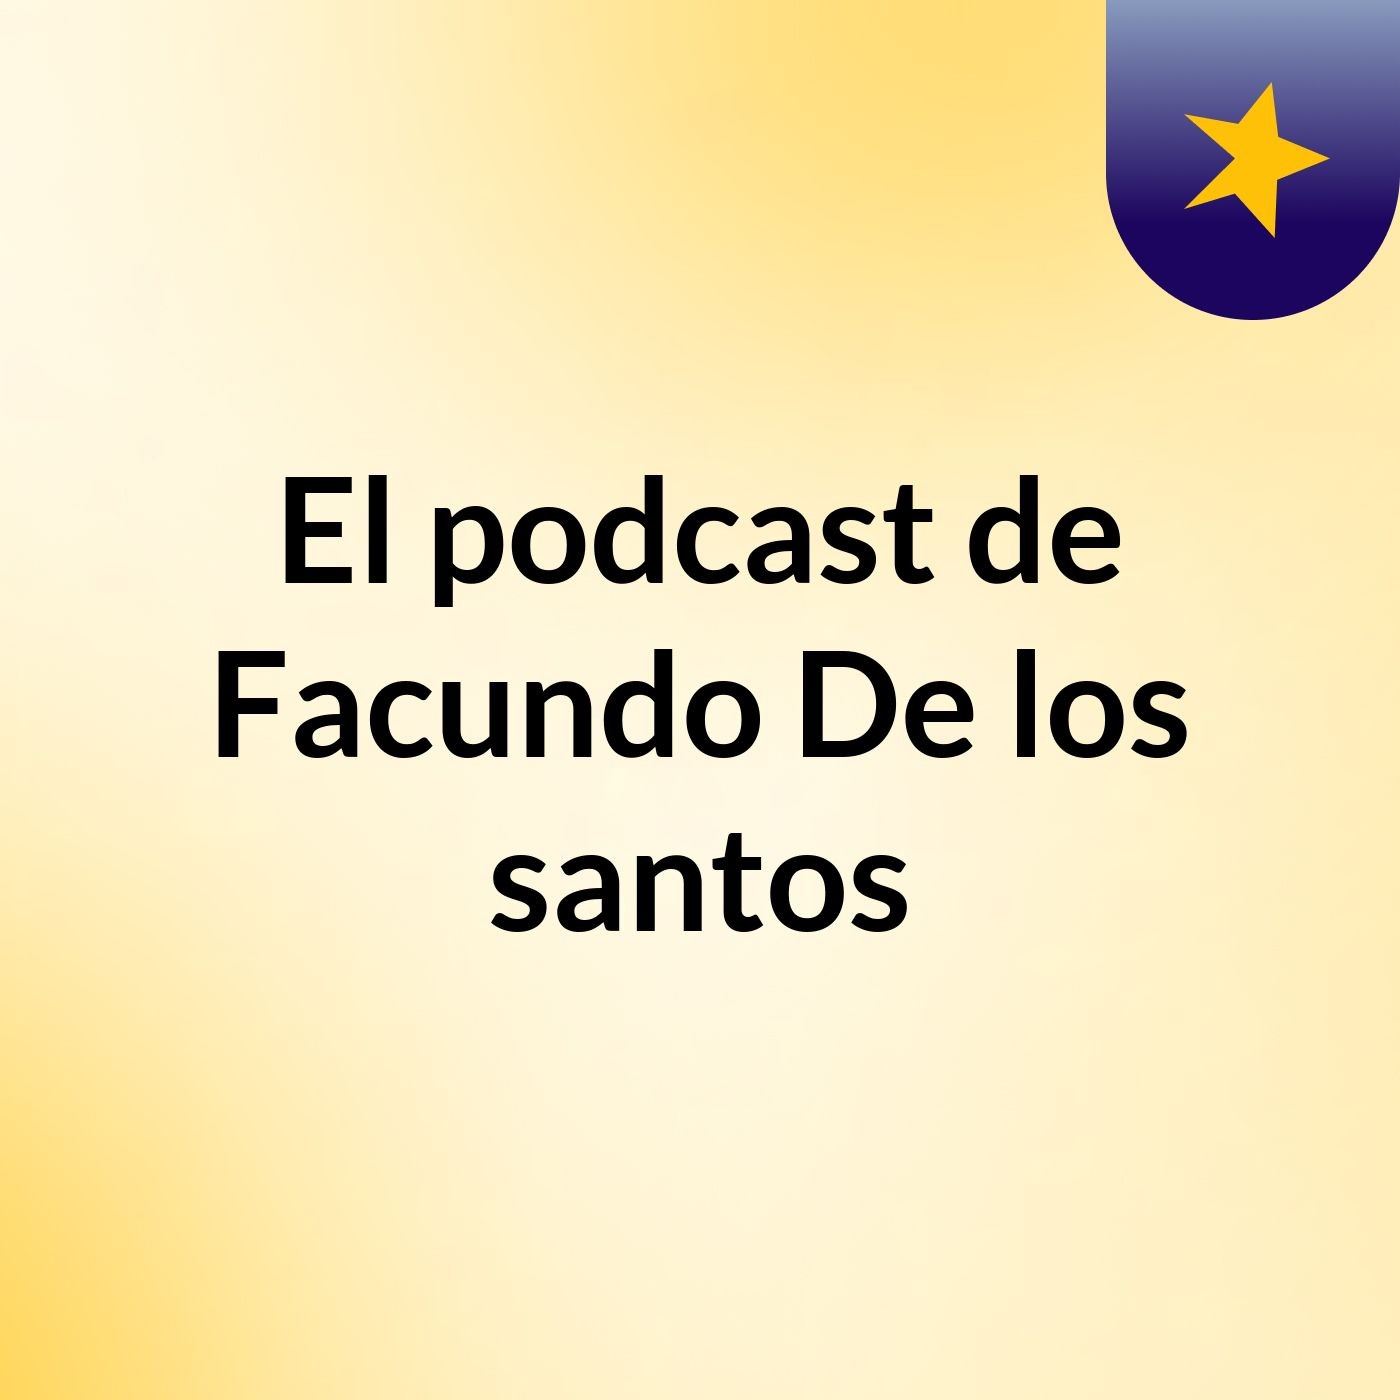 El podcast de Facundo De los santos